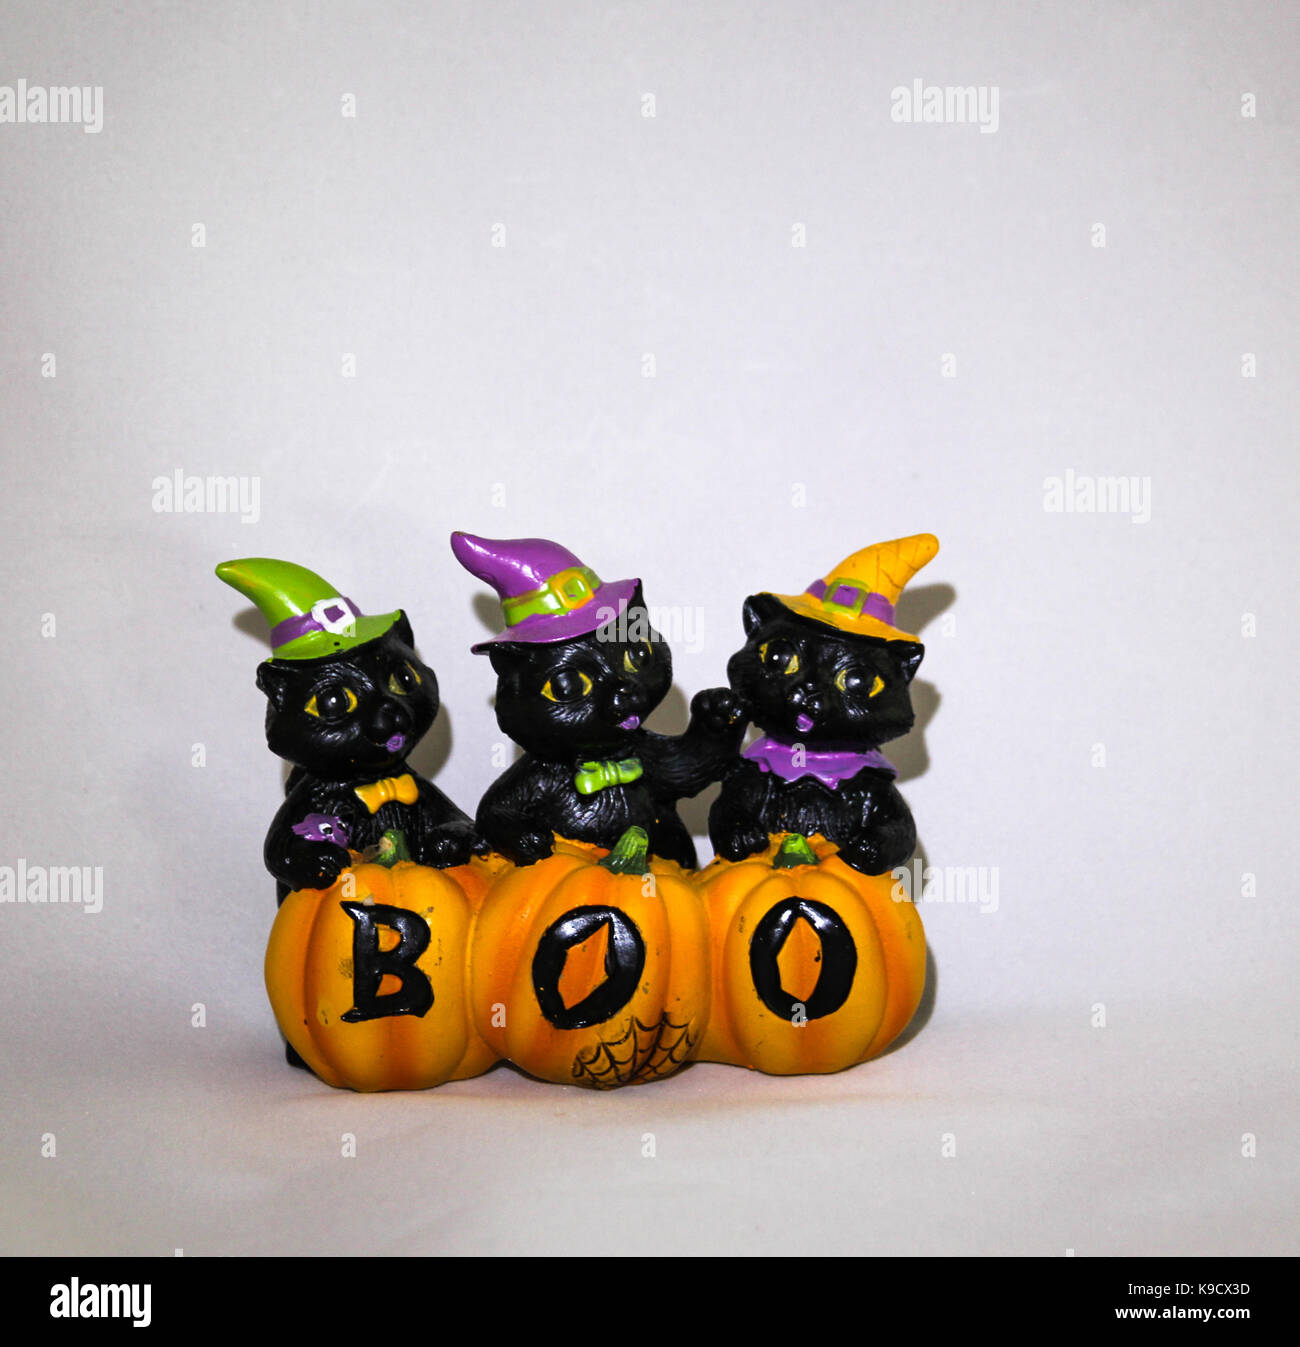 Three black cats Stock Photo